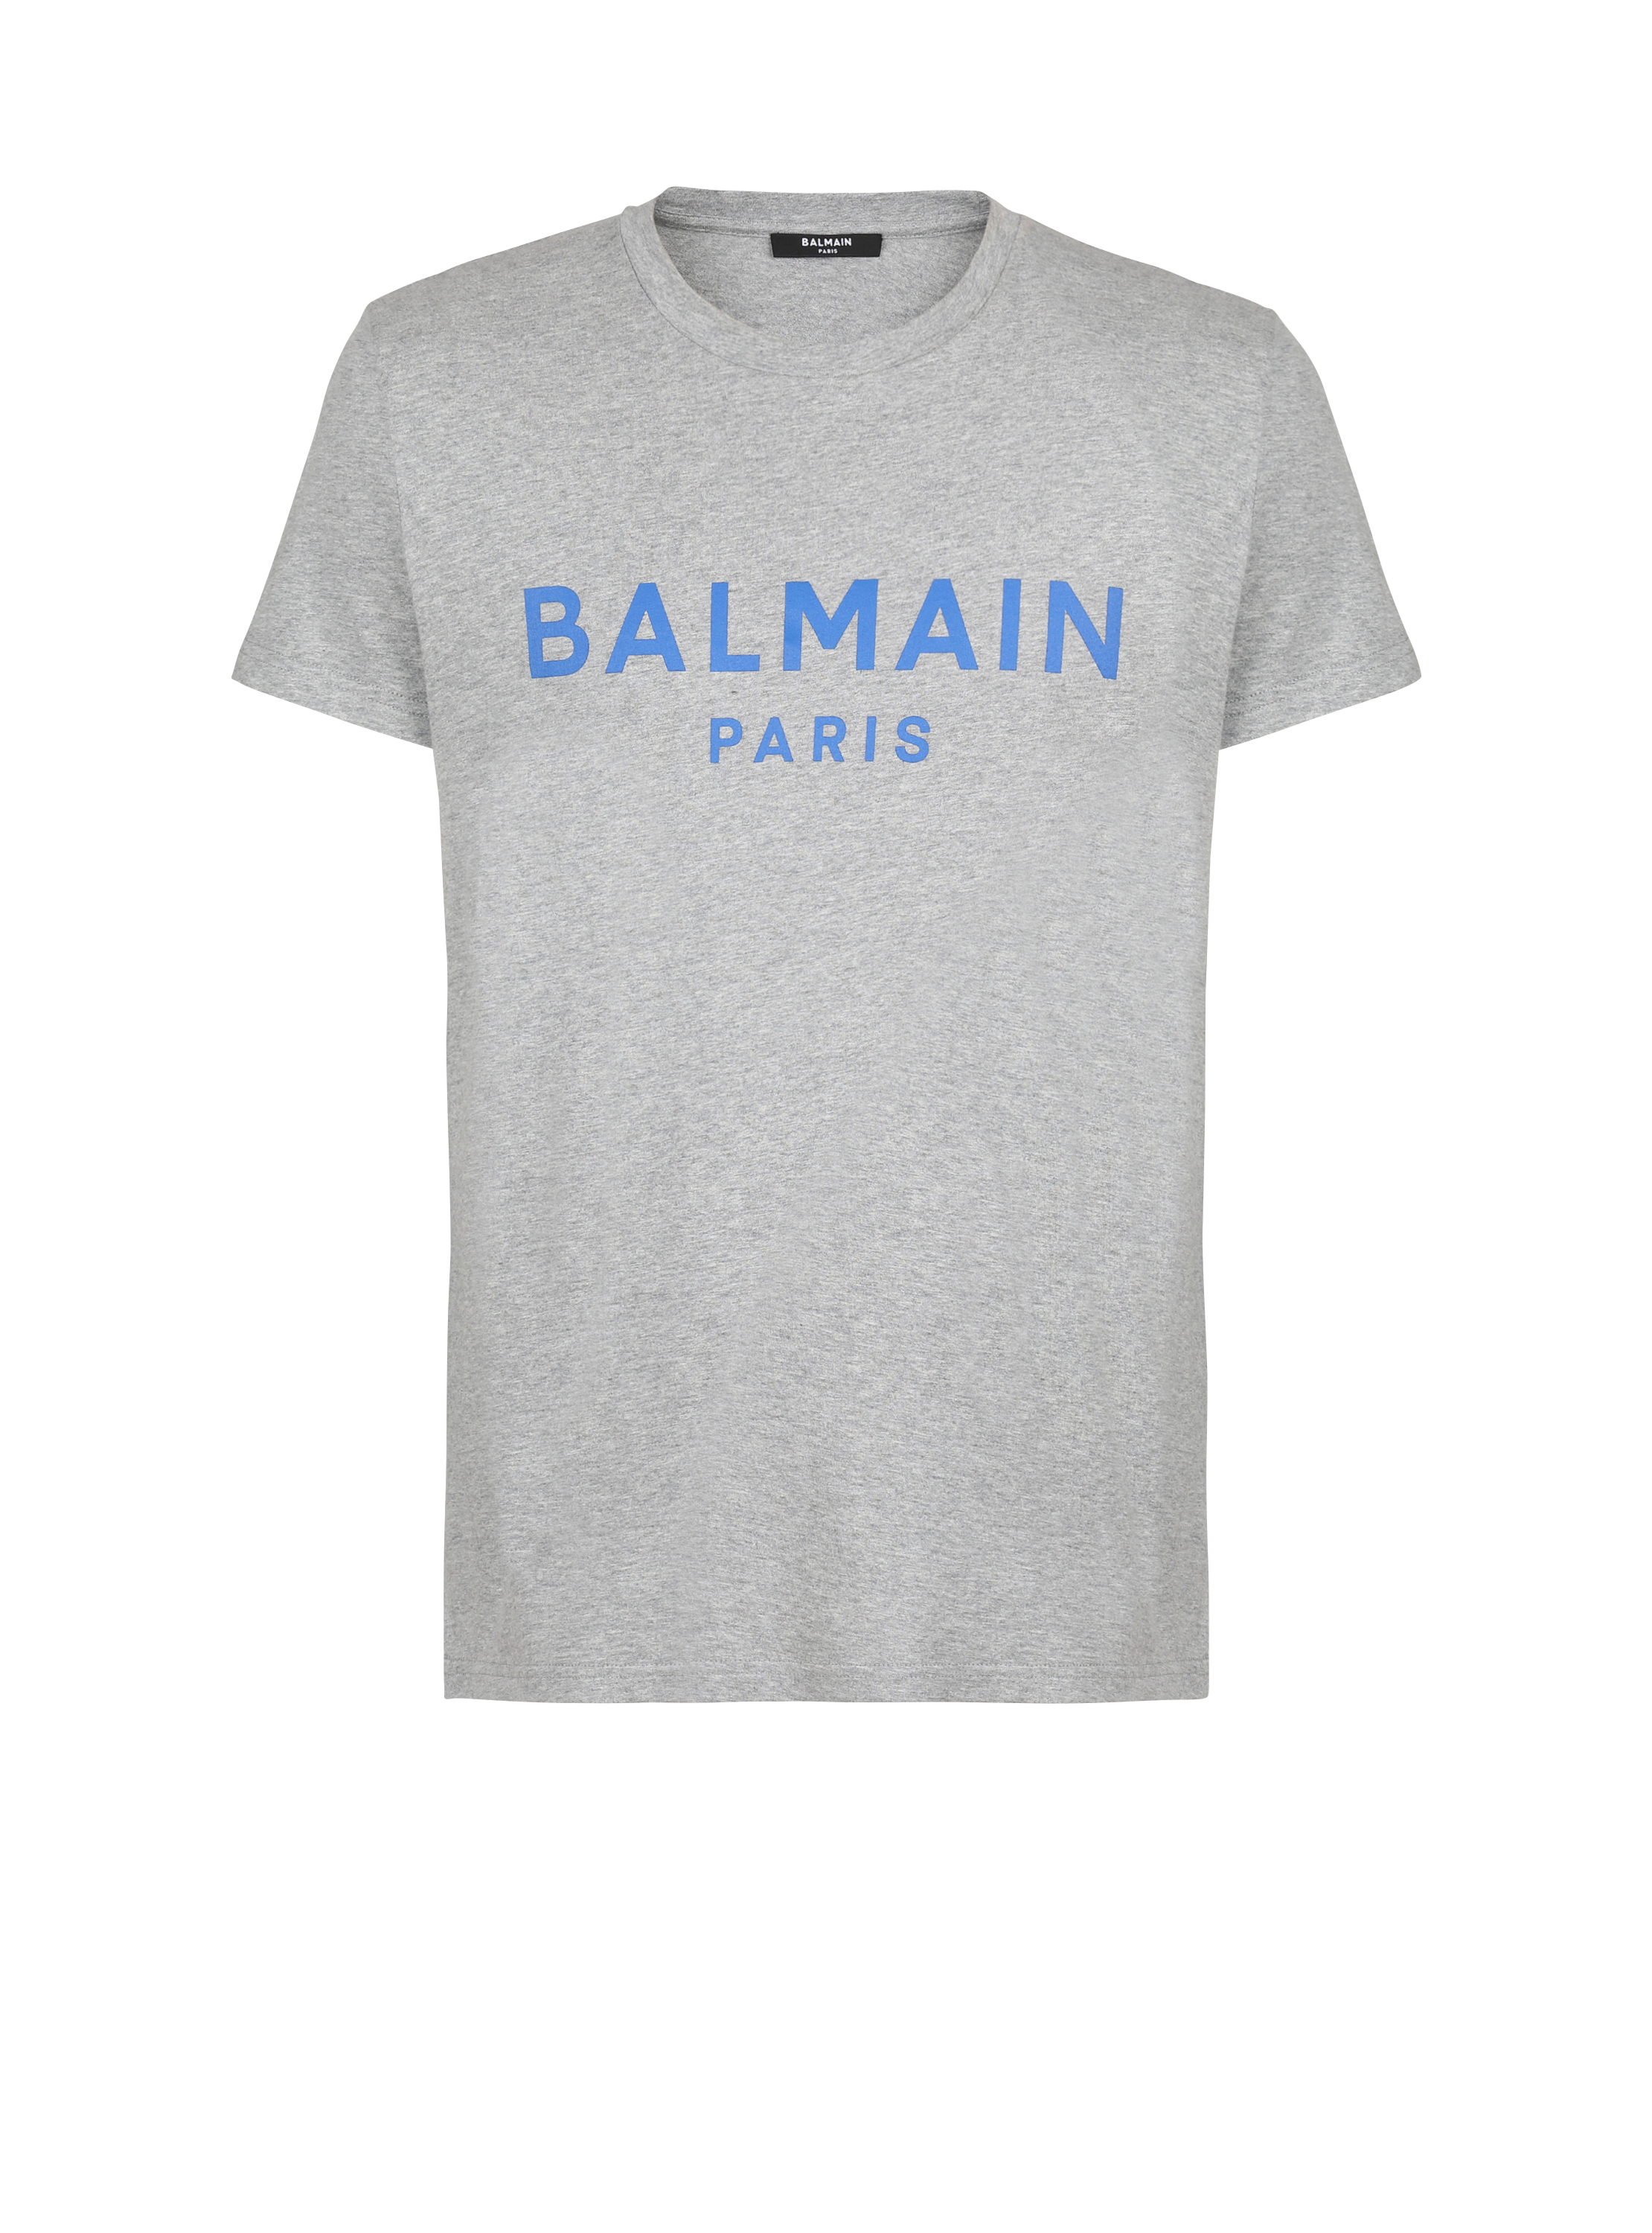 Camiseta de algodón con logotipo de Balmain estampado, gris, hi-res